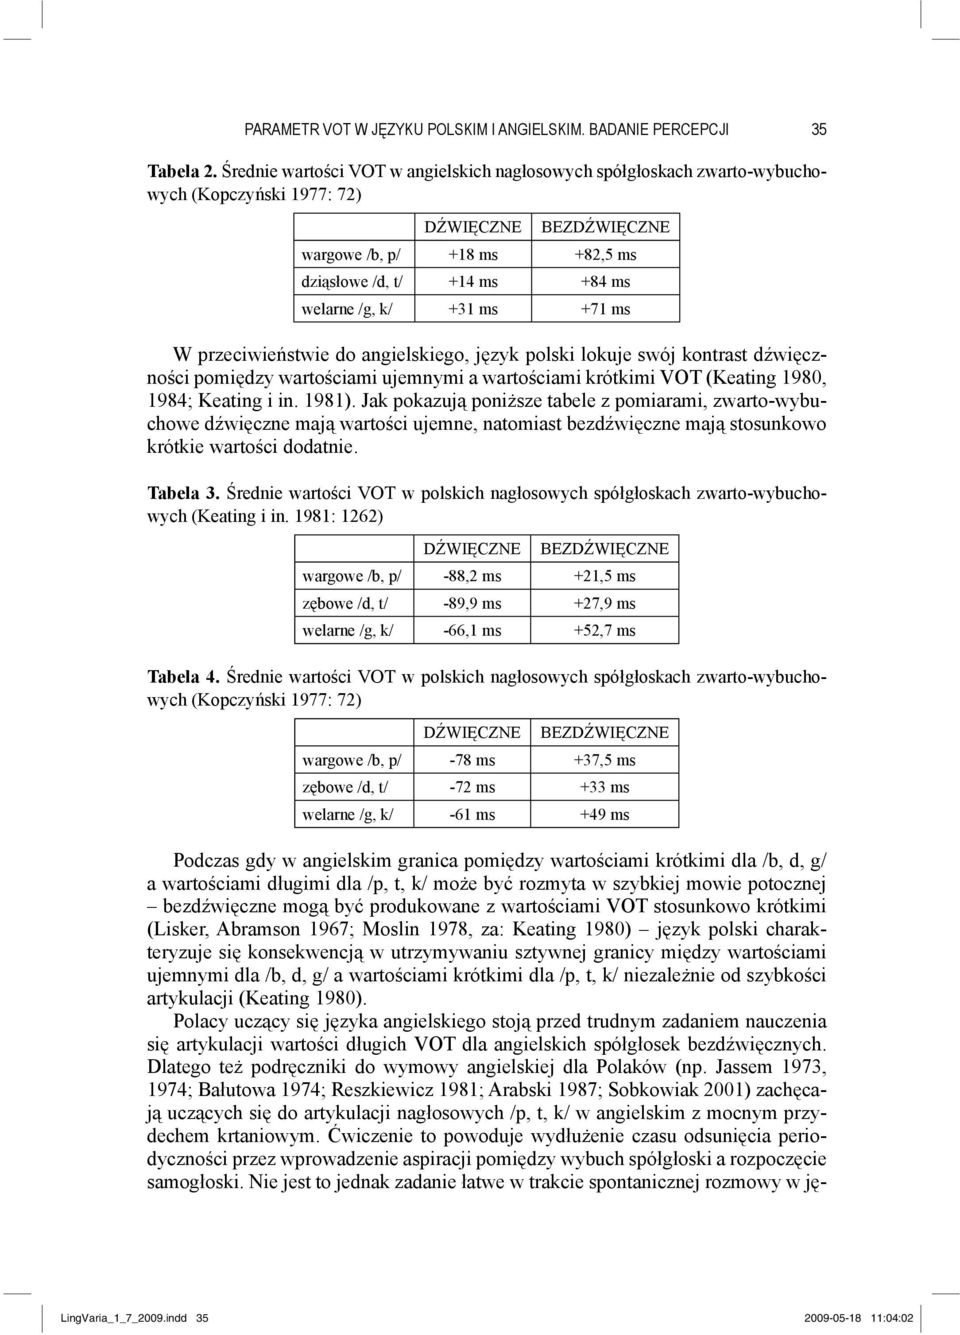 +31 ms +71 ms W przeciwieństwie do angielskiego, język polski lokuje swój kontrast dźwięczności pomiędzy wartościami ujemnymi a wartościami krótkimi (Keating 1980, 1984; Keating i in. 1981).